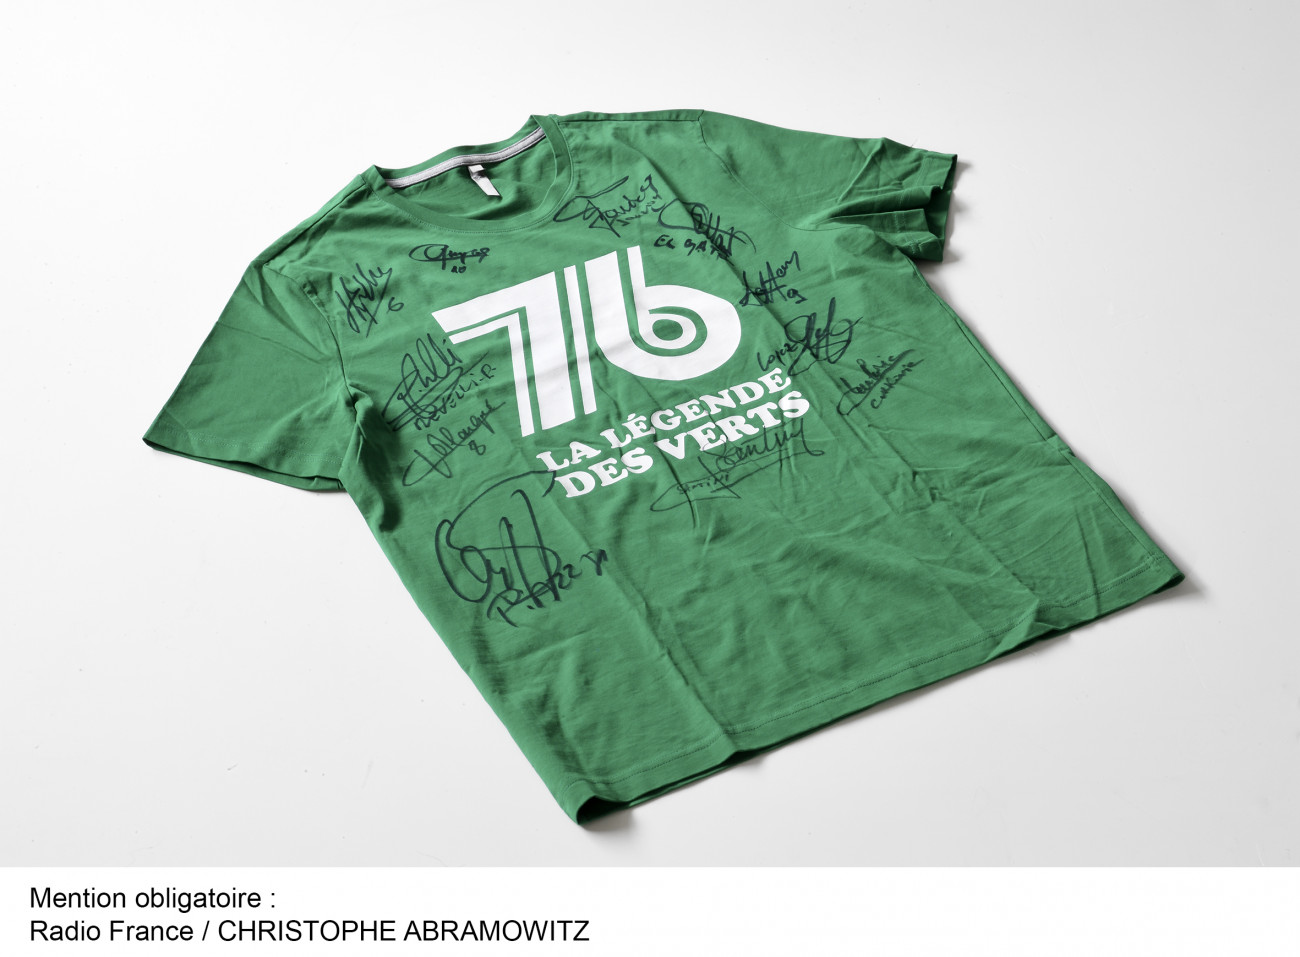 maillot des Verts des années 70 de Saint-Etienne